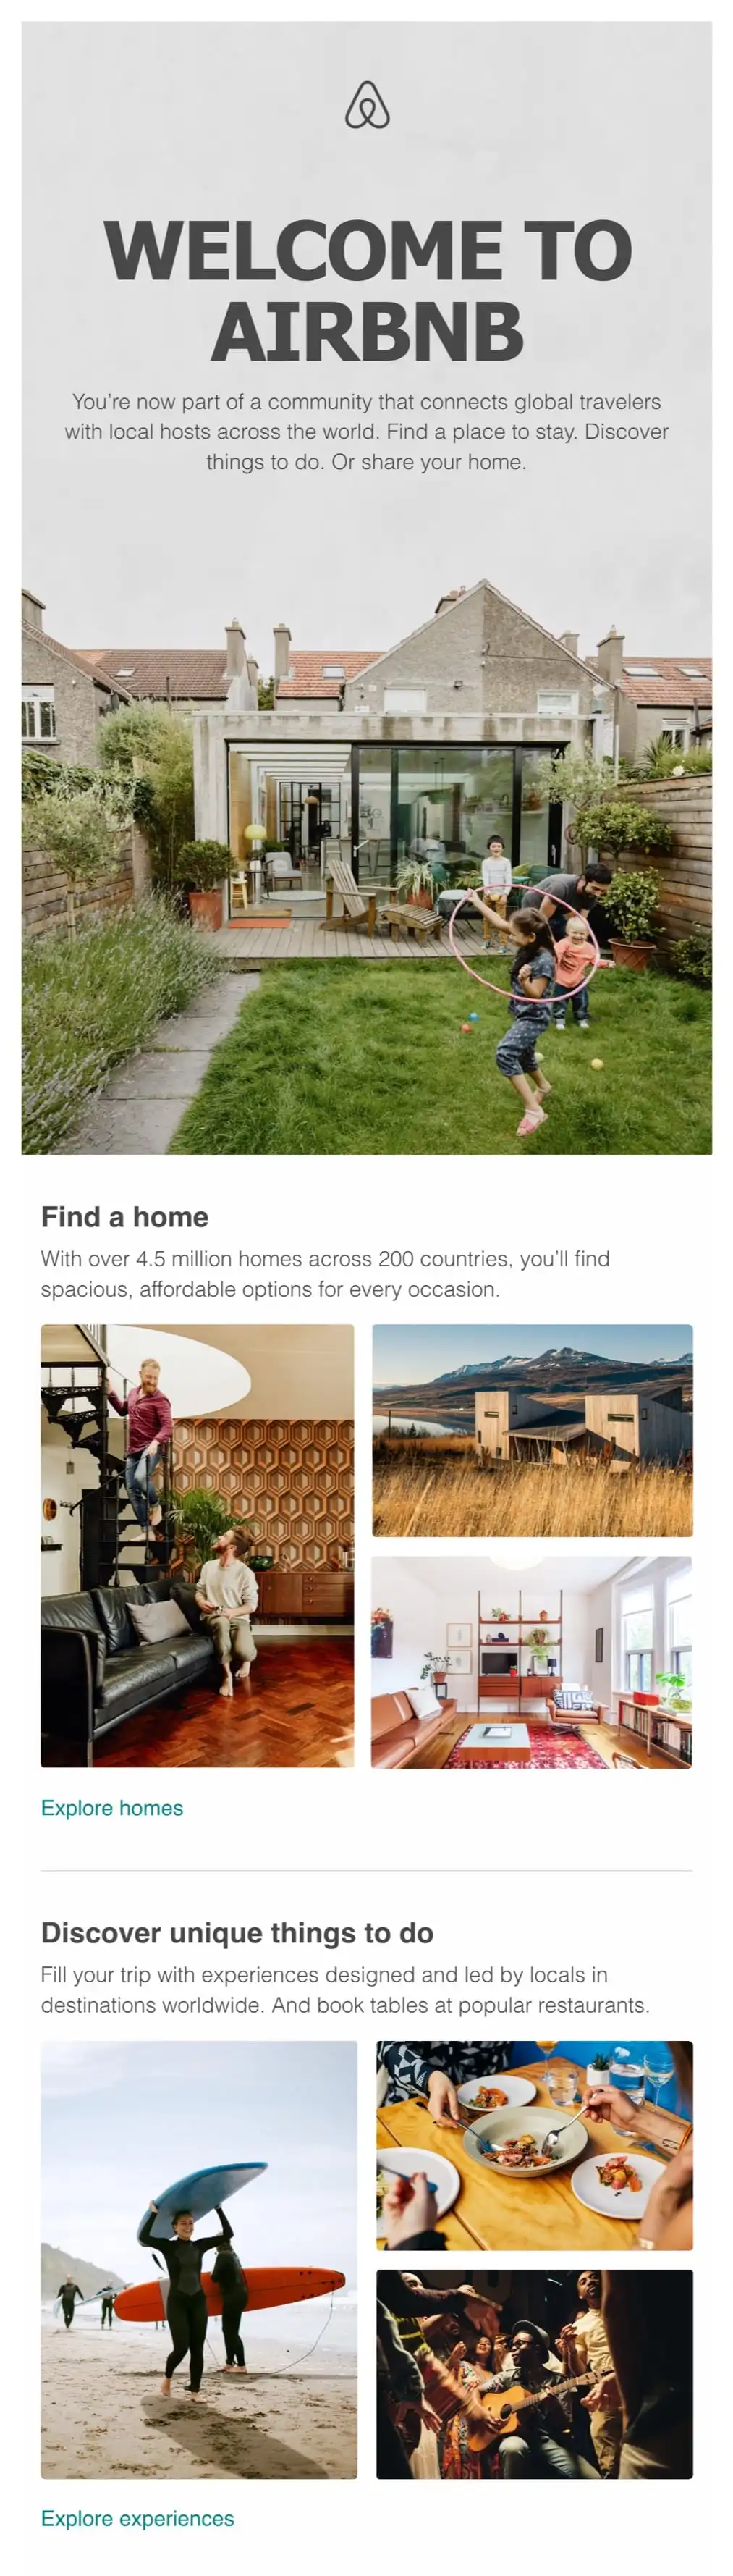 ウェルカムメールの例-airbnb